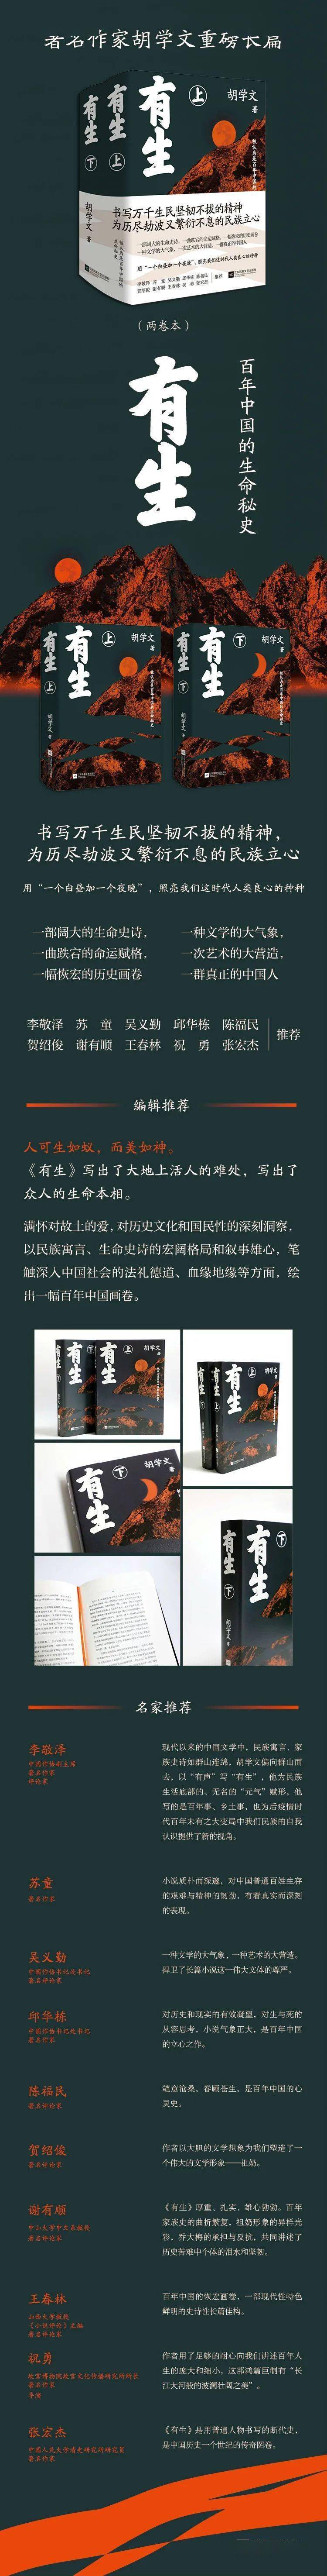 小说作家排行榜言情_河北作家三部作品入选2020年度中国小说排行榜